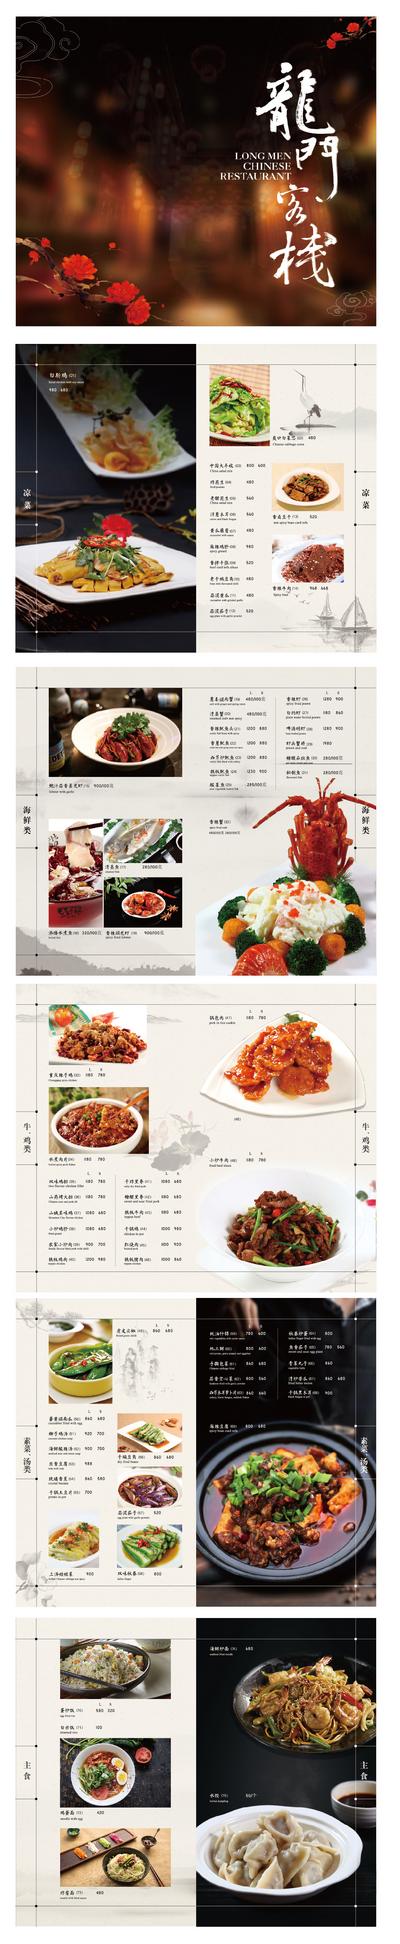 南门网 菜单 菜谱 餐饮 美食 菜品 新中式